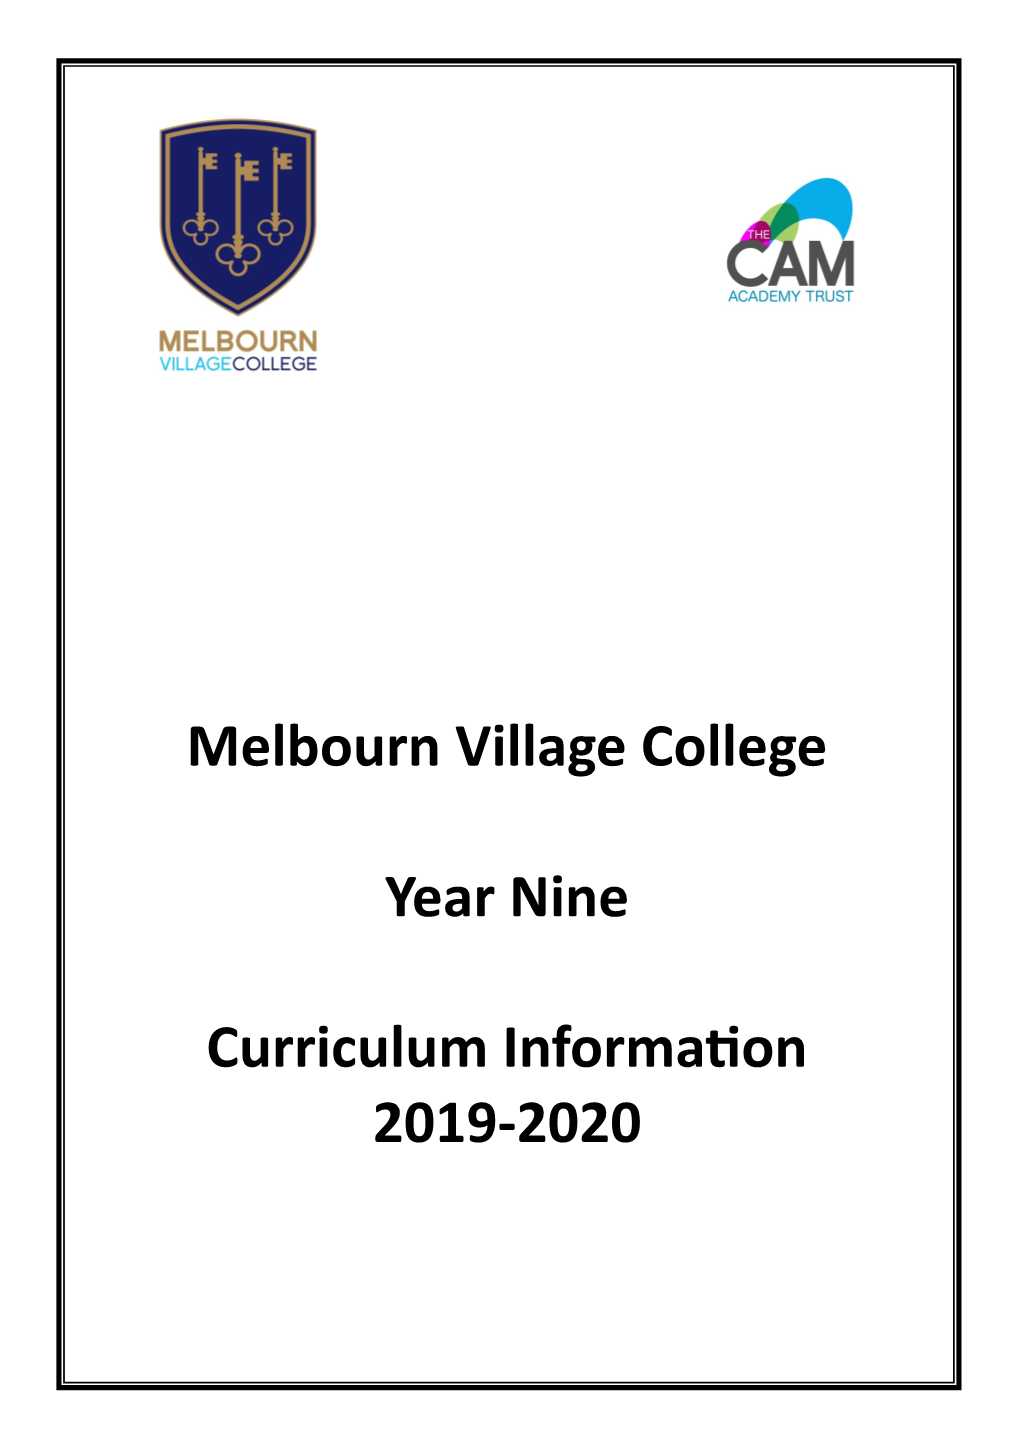 Melbourn Village College Year Nine Curriculum Information 2019-2020